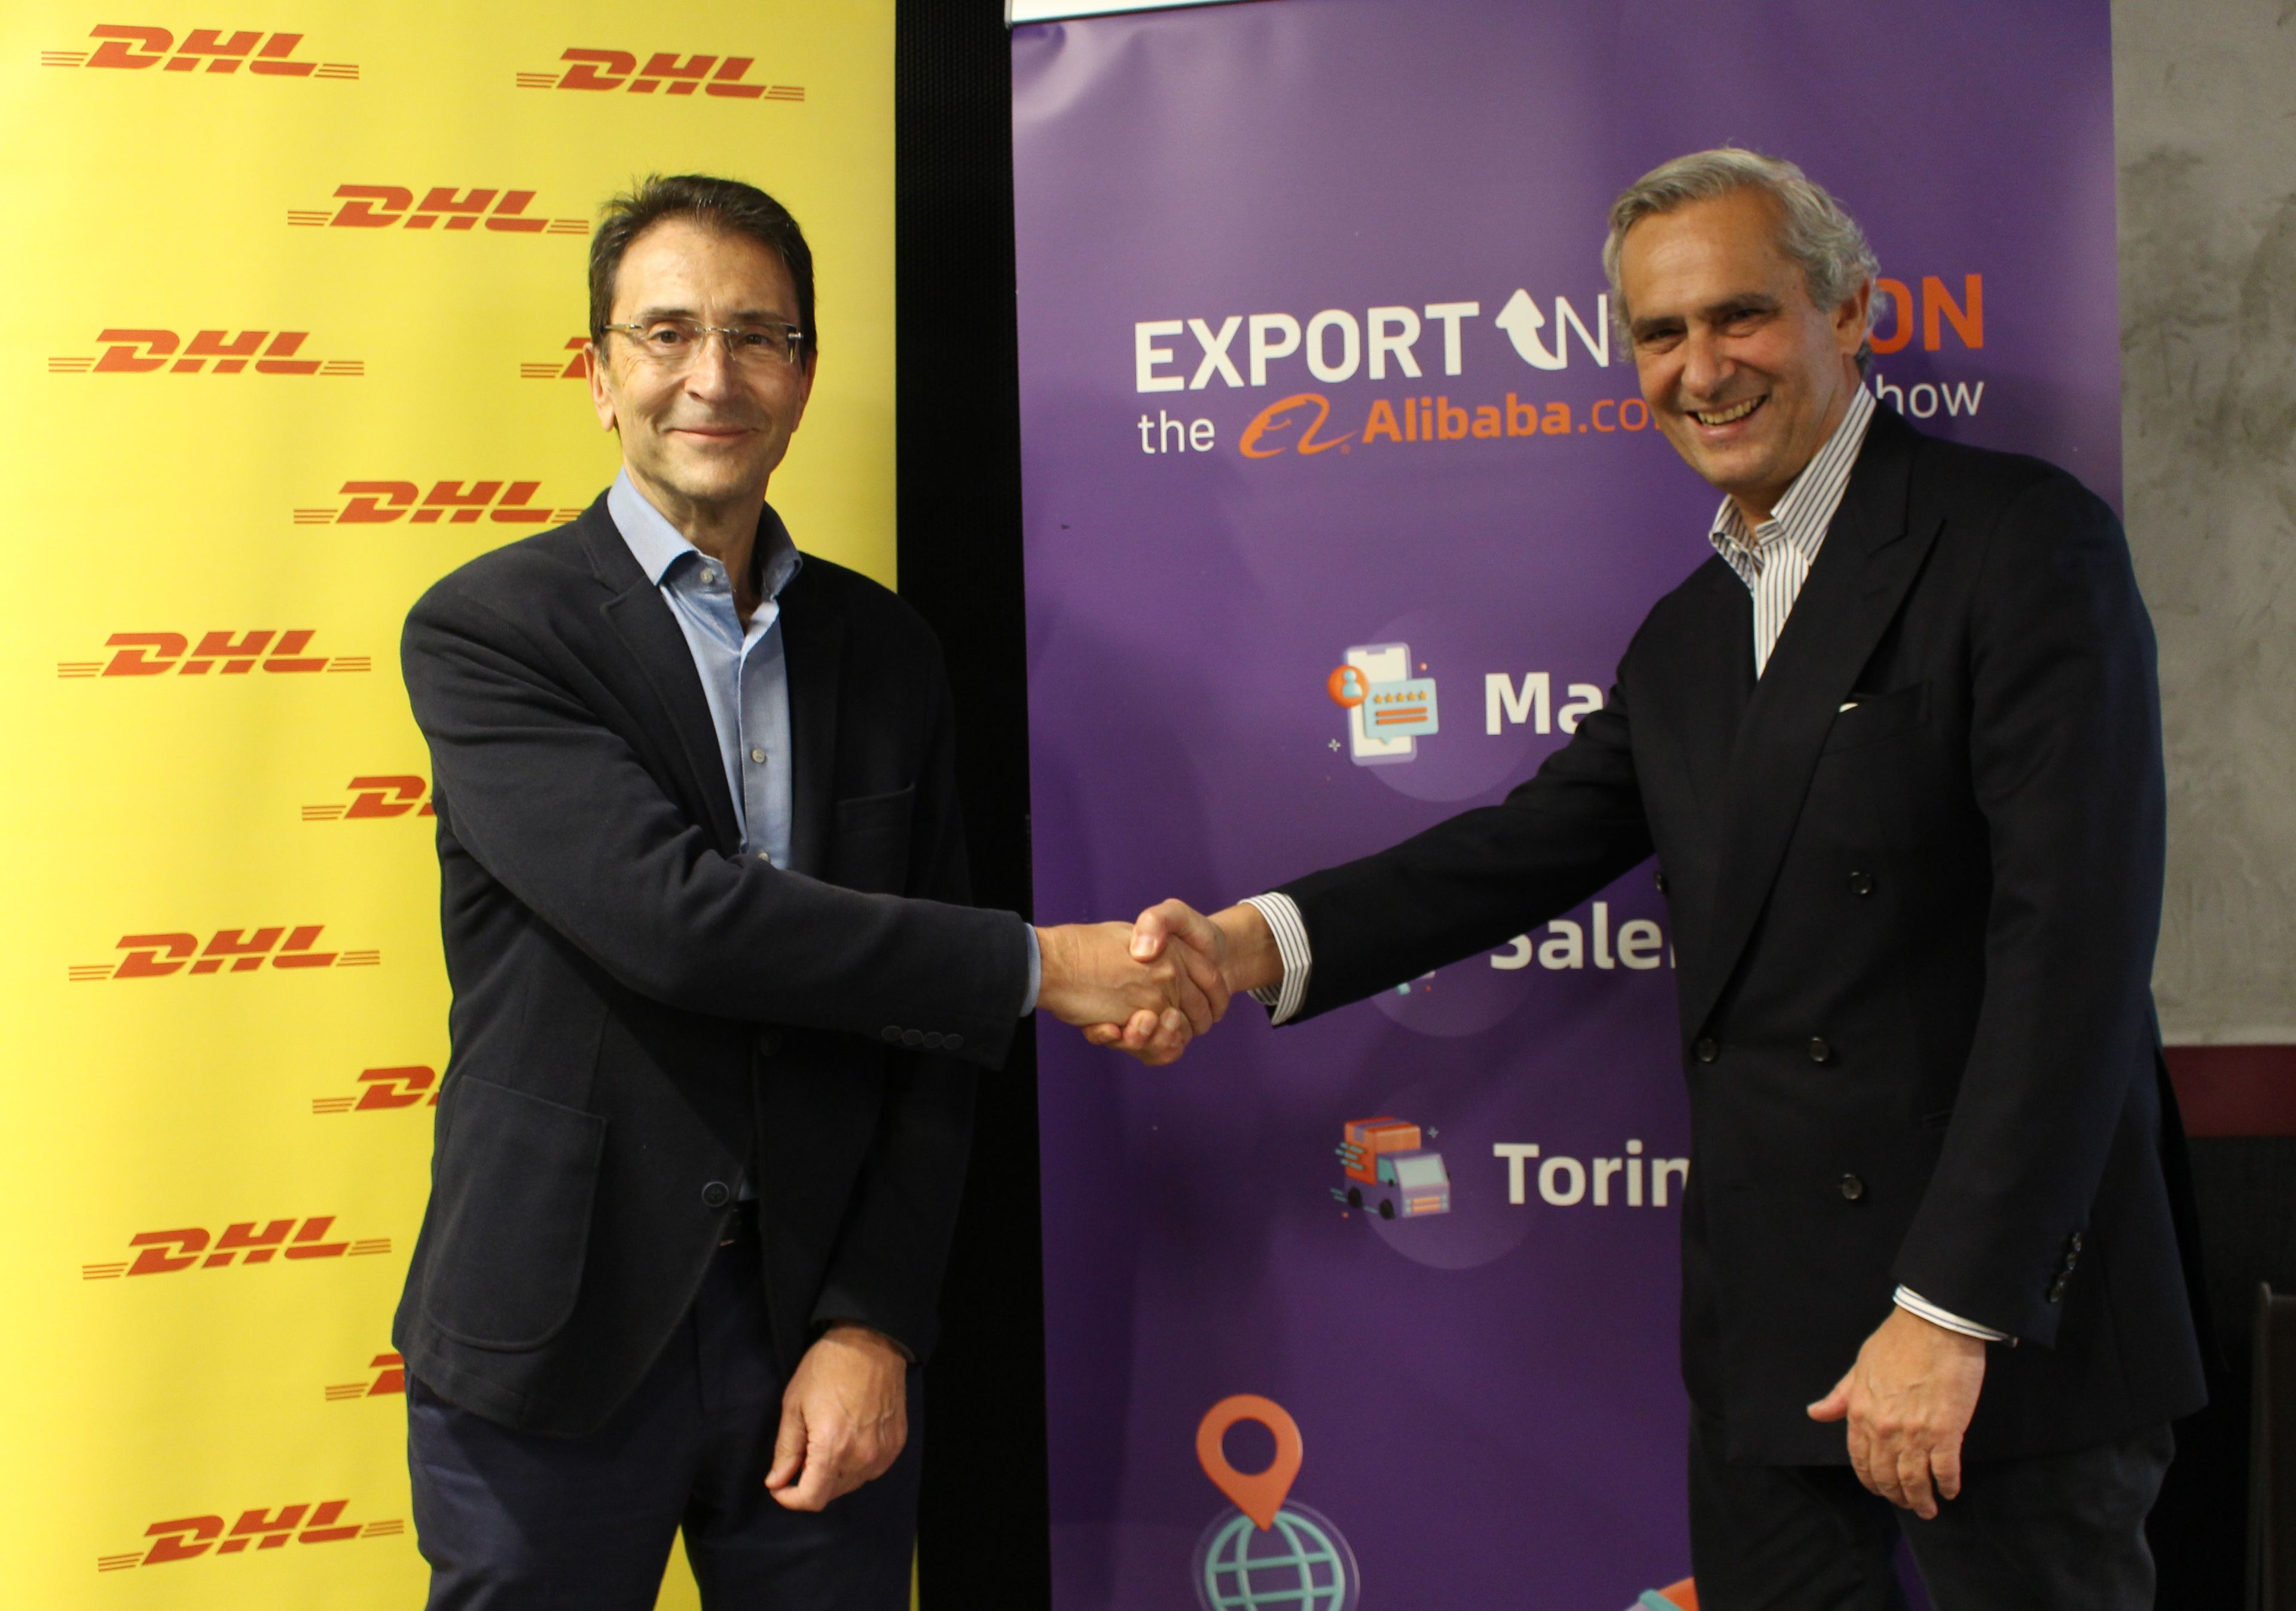 Miguel Borrás, director general de DHL Express España (izquierda), junto a Rodrigo Cipriani, director general del grupo Alibaba en el Sur de Europa.